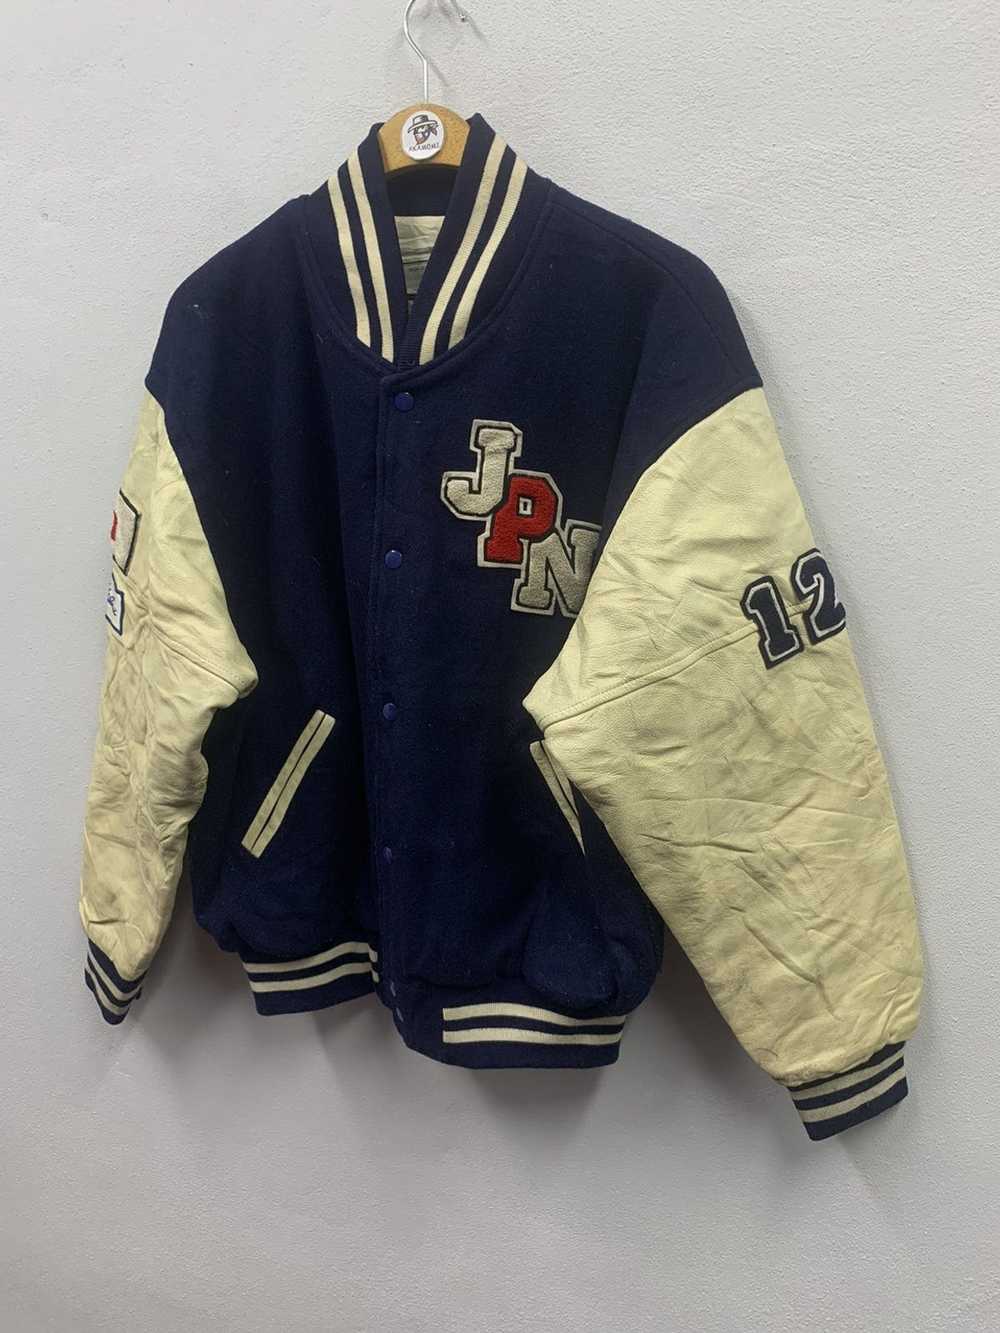 Hockey × Leather Jacket × Varsity Jacket Vintage … - image 3